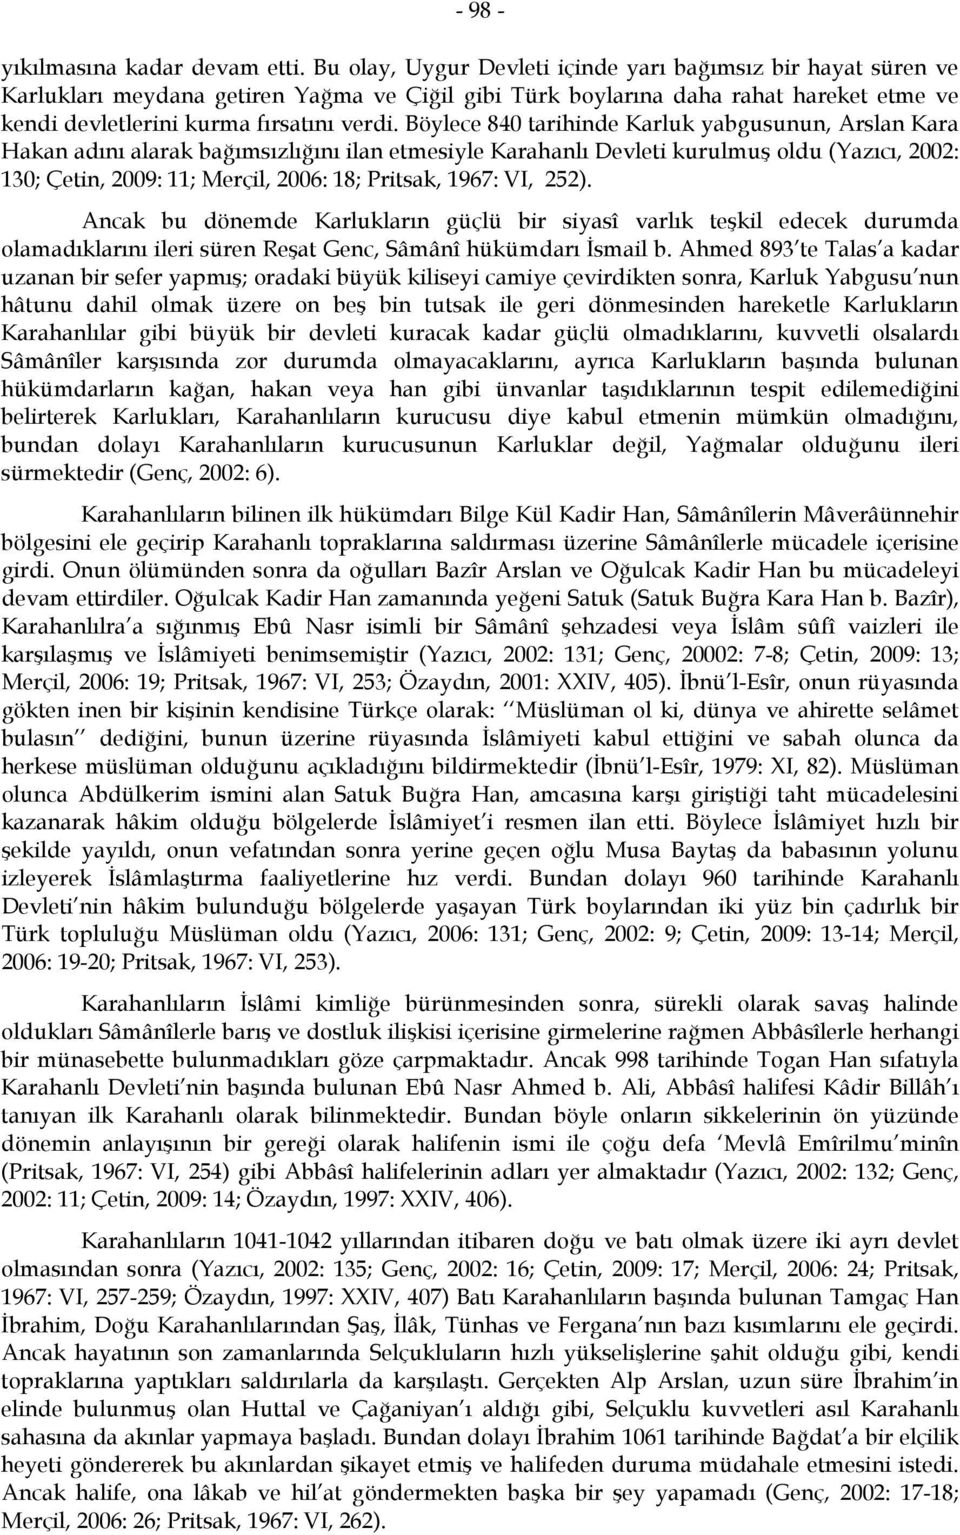 Böylece 840 tarihinde Karluk yabgusunun, Arslan Kara Hakan adını alarak bağımsızlığını ilan etmesiyle Karahanlı Devleti kurulmuş oldu (Yazıcı, 2002: 130; Çetin, 2009: 11; Merçil, 2006: 18; Pritsak,